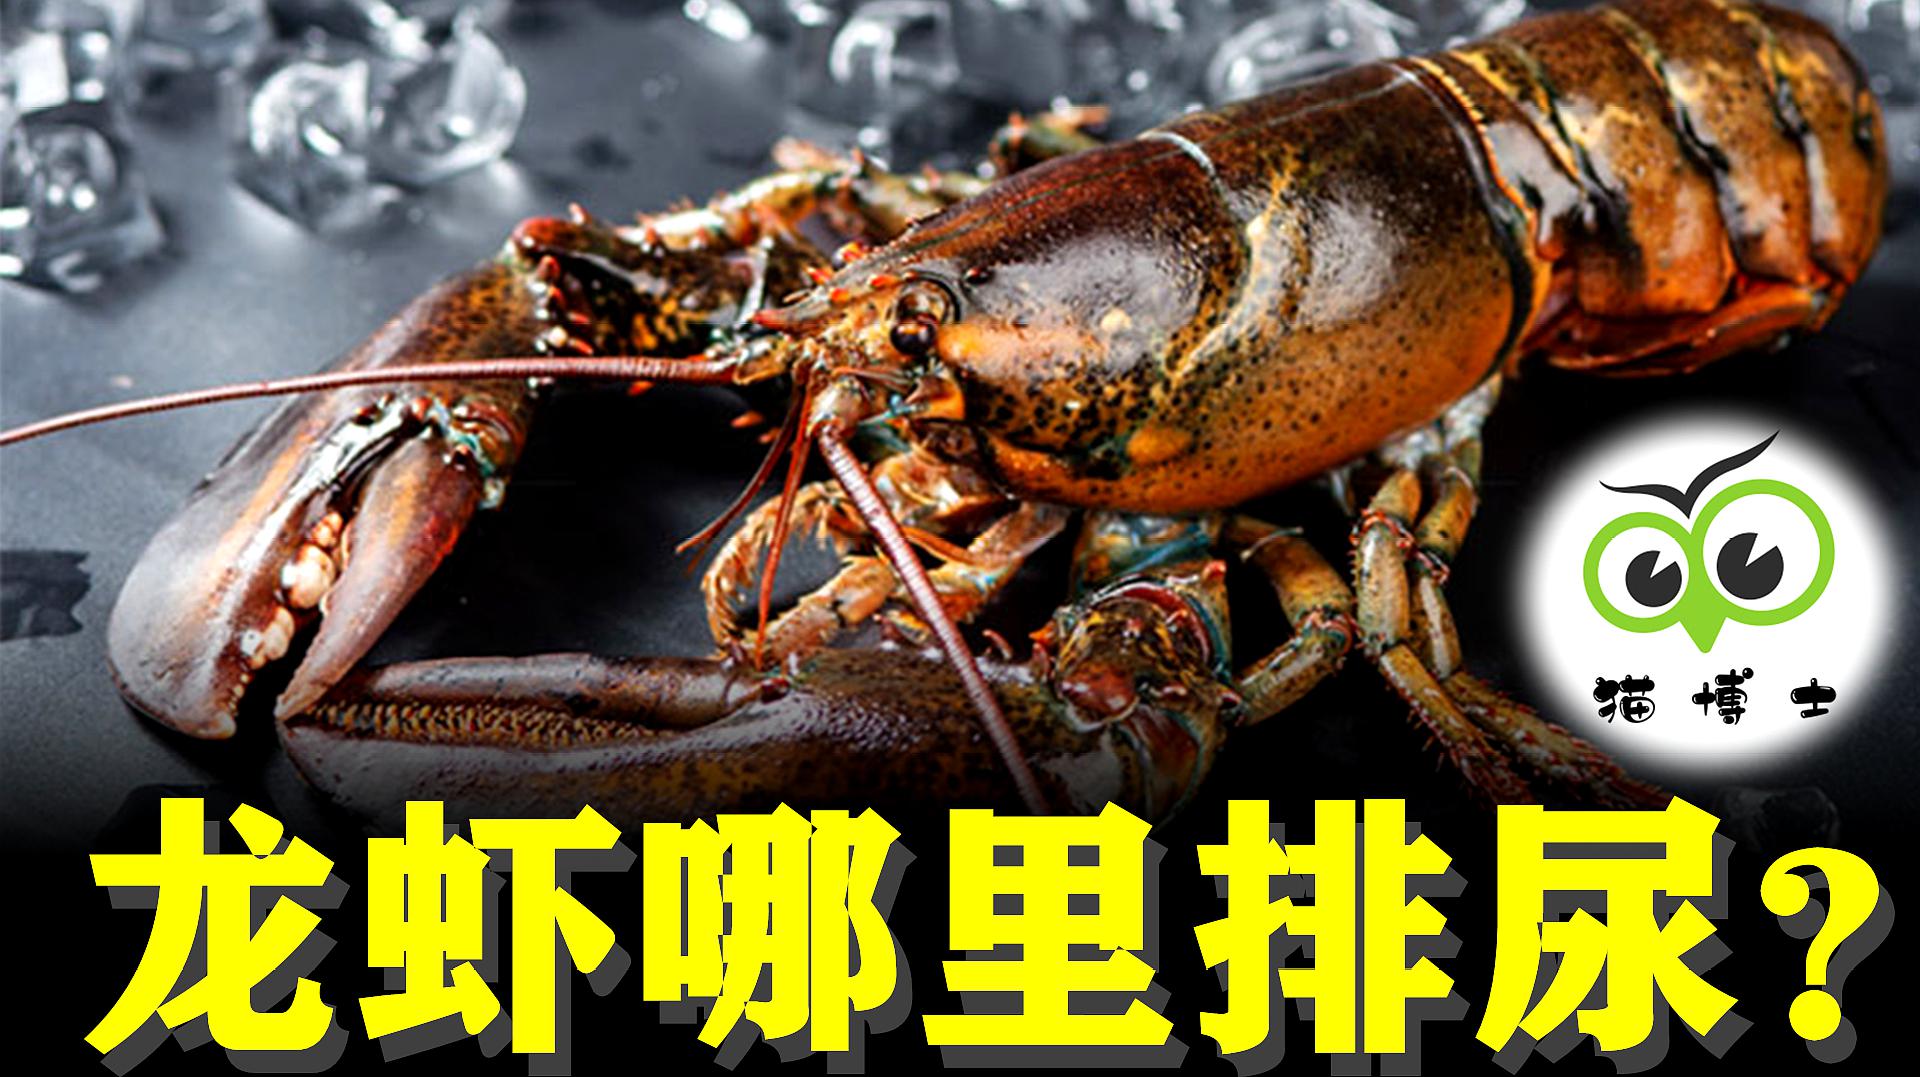 [图]龙虾是怎么排尿的?看完你还觉得“香”吗?